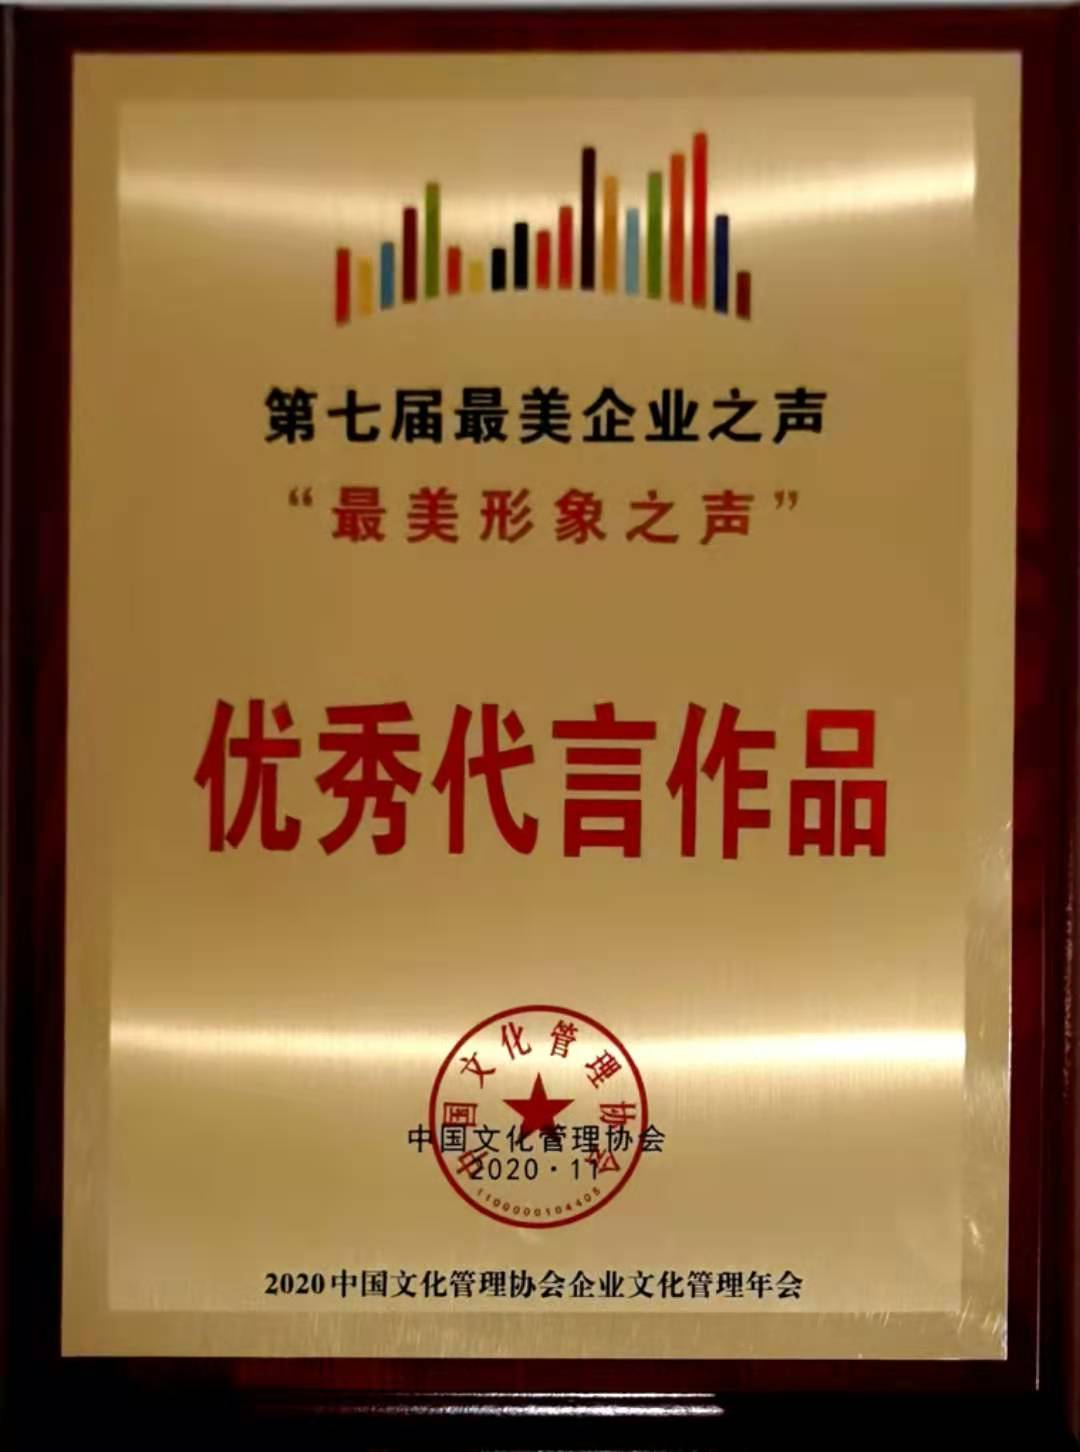 陕钢集团获评全国企业党建实践创新典范单位